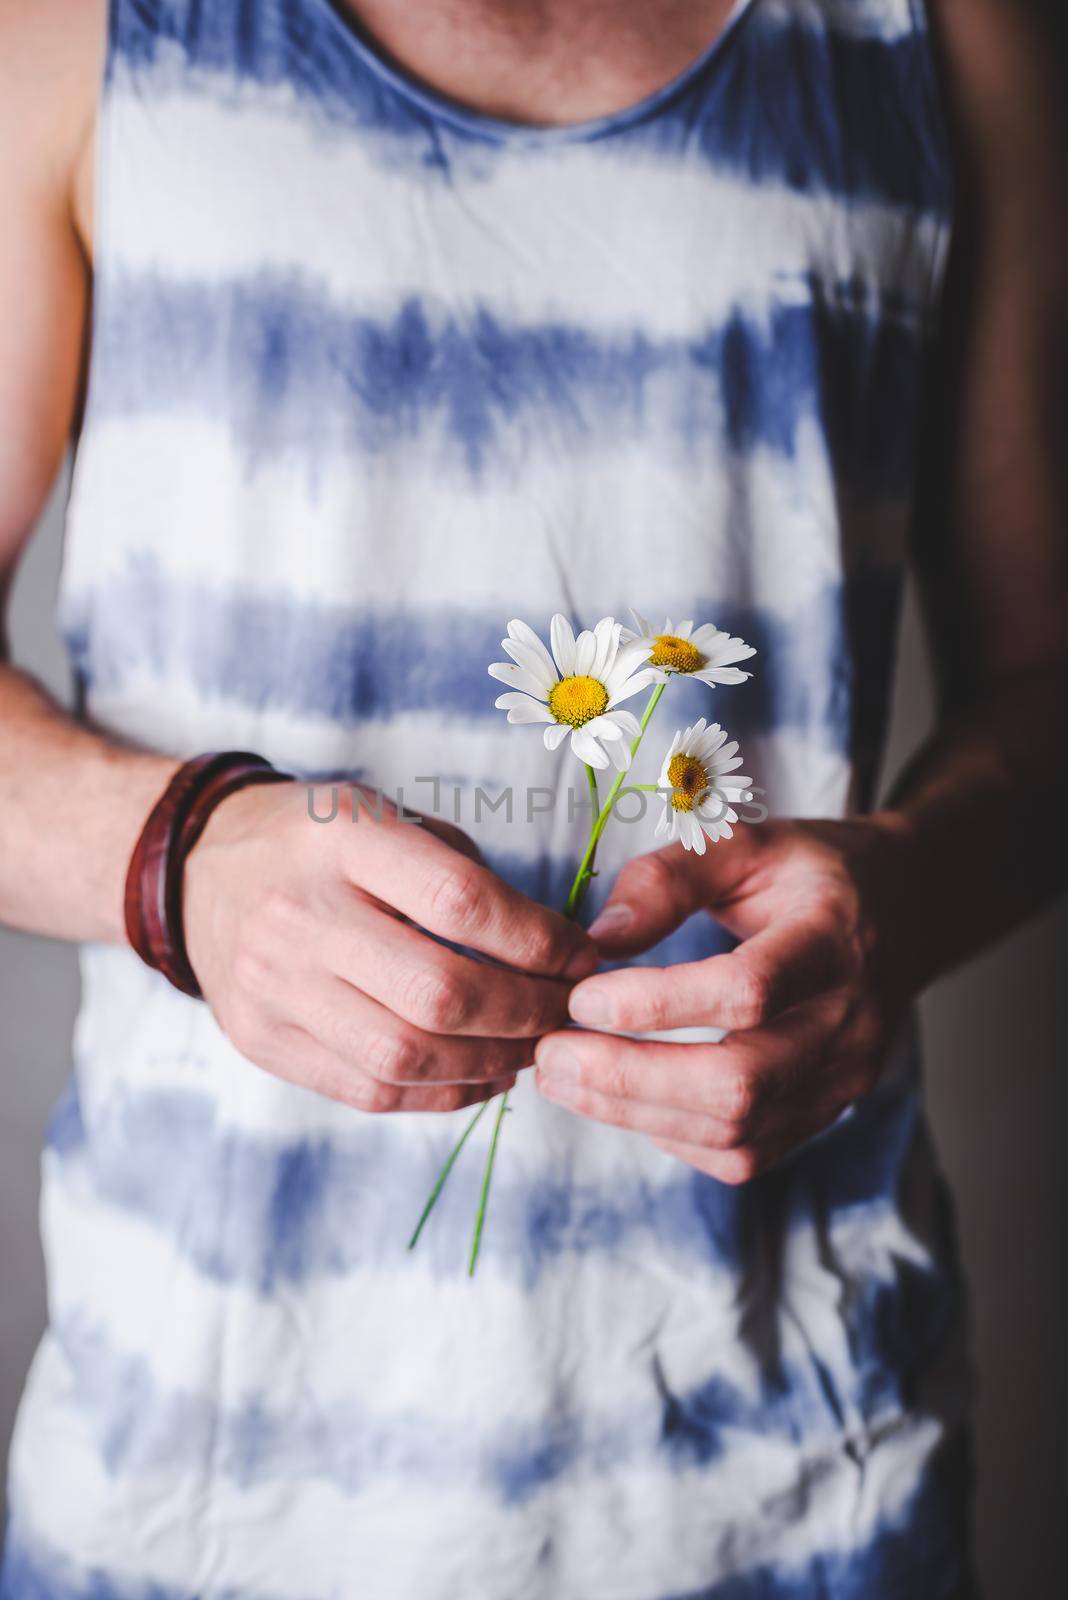 Daisy flowers in male hands by Seva_blsv